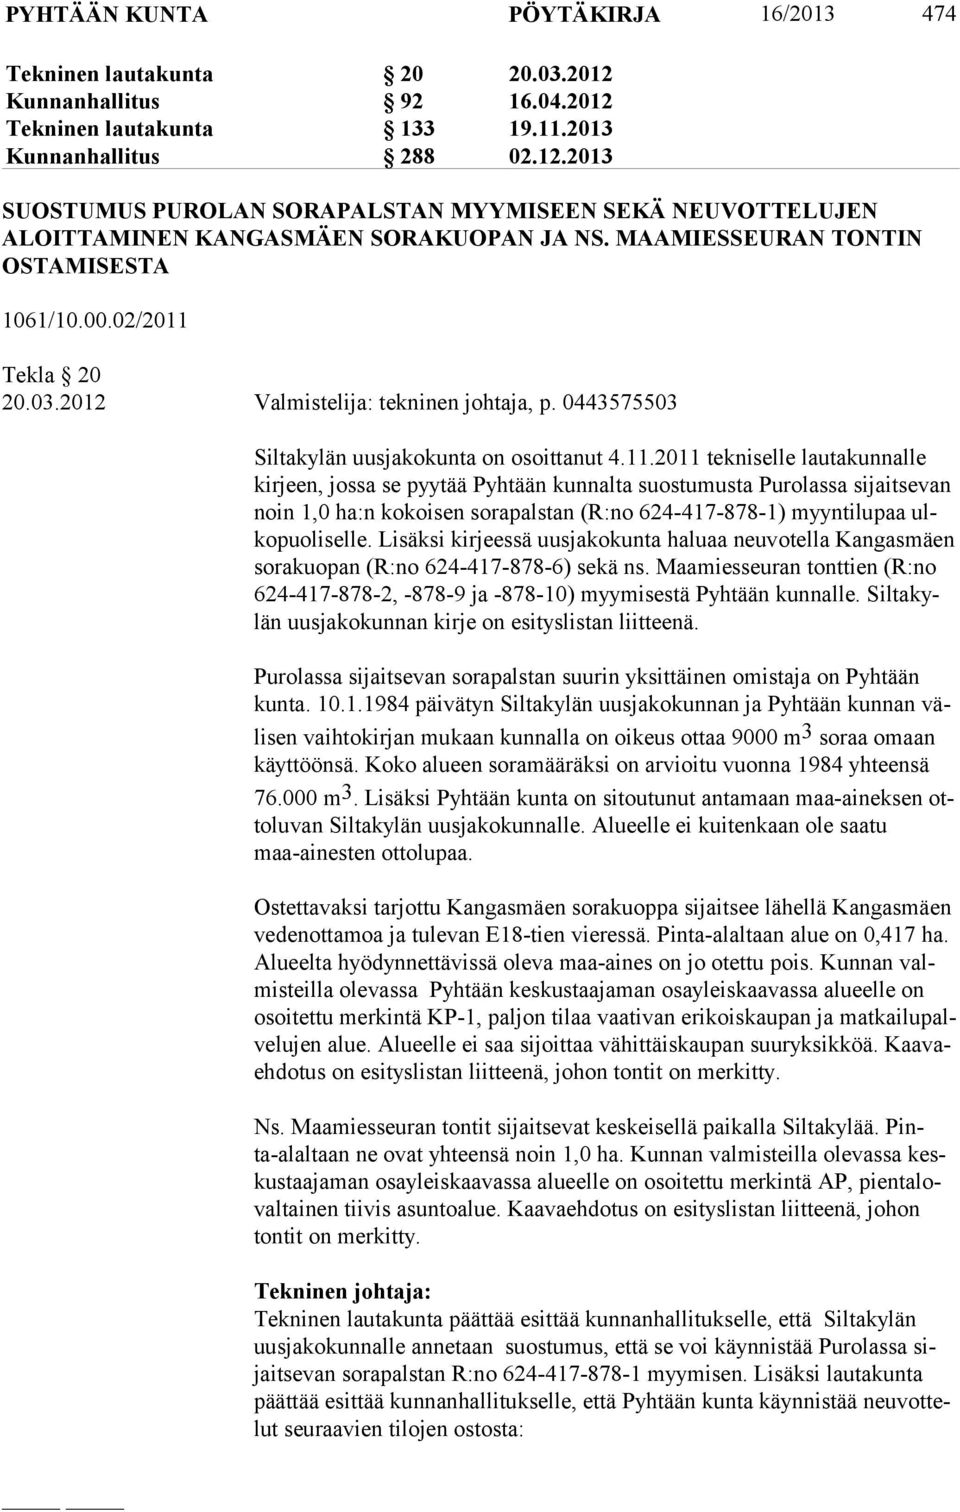 Tekla 20 20.03.2012 Valmistelija: tekninen johtaja, p. 0443575503 Siltakylän uusjakokunta on osoittanut 4.11.